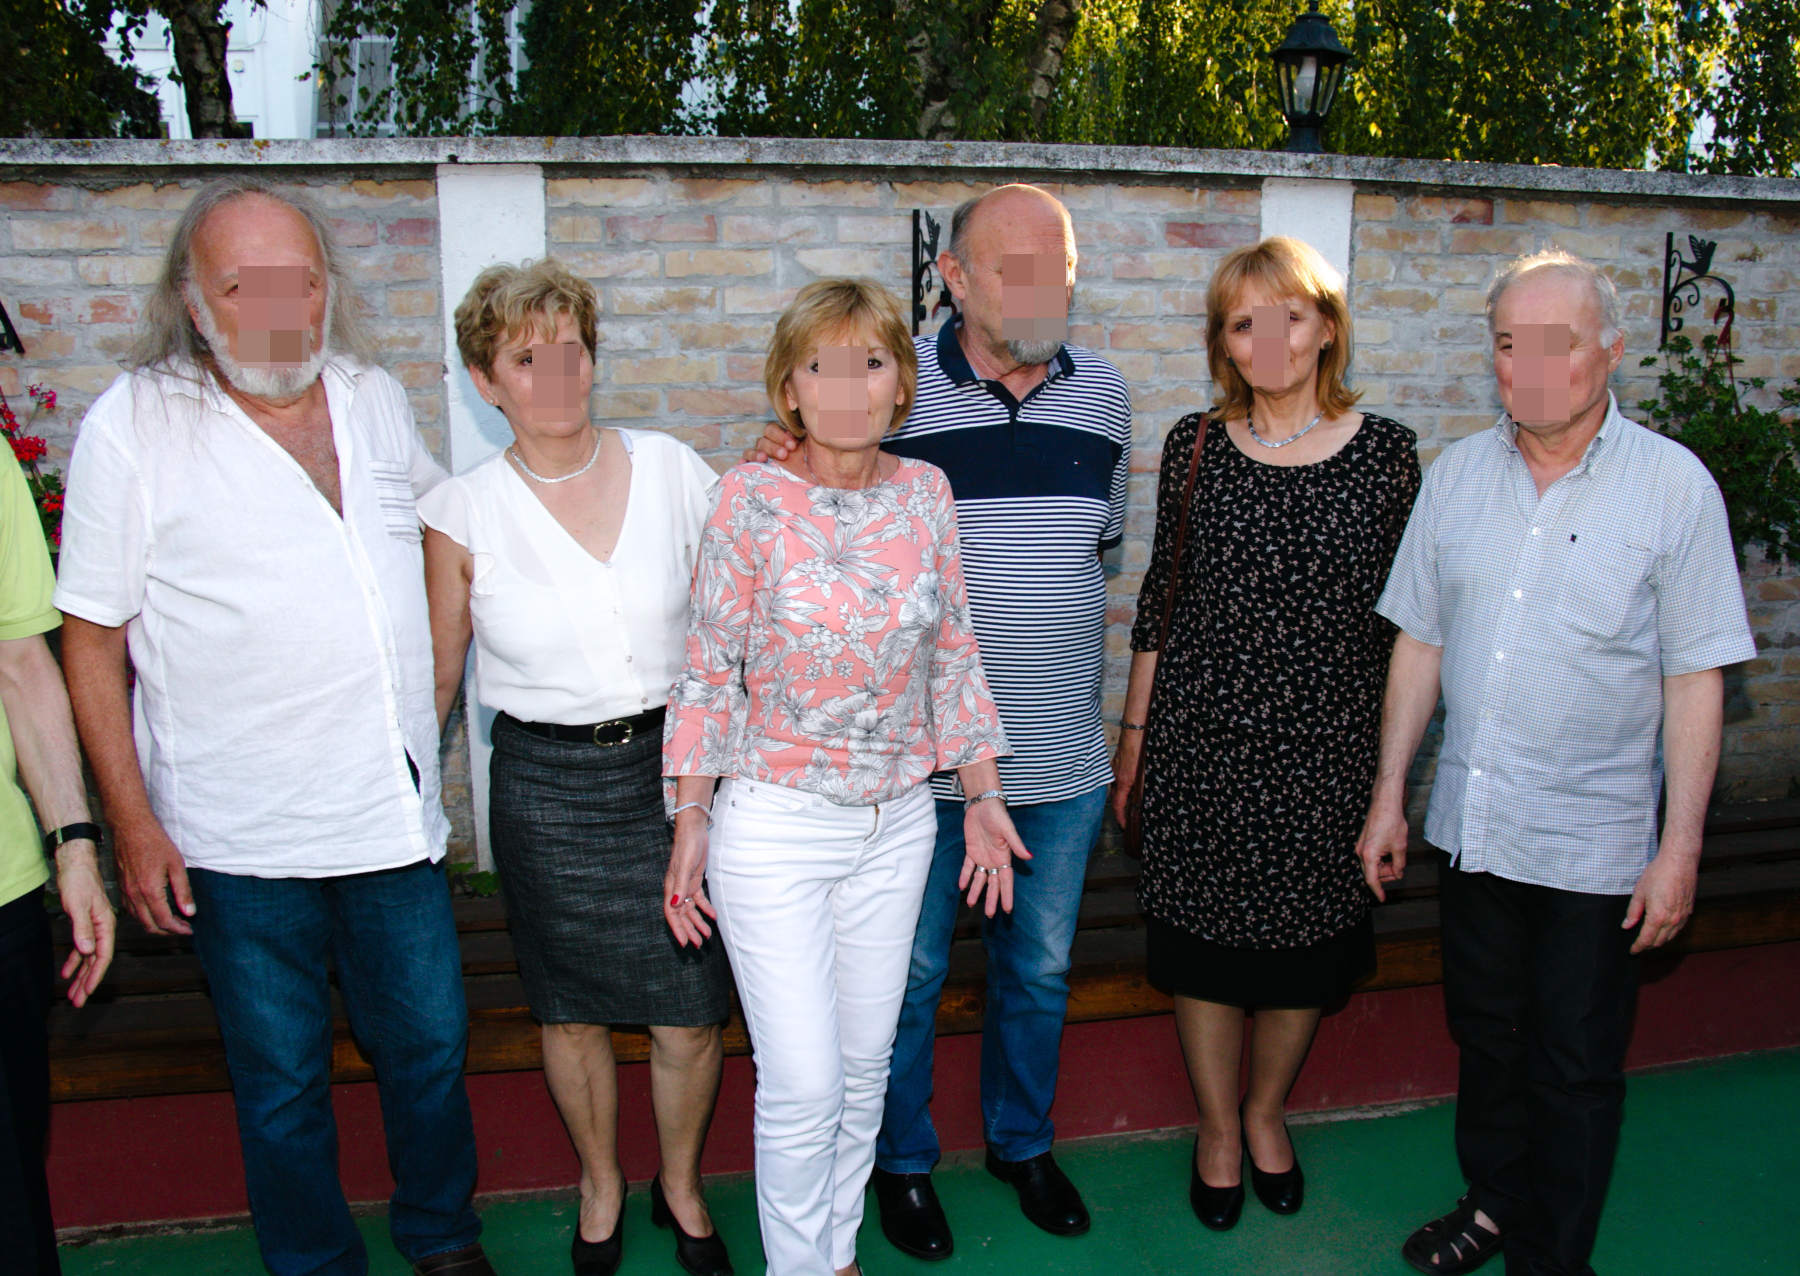 from left: I, Mima, Dragana, Paja, J.J., Borko